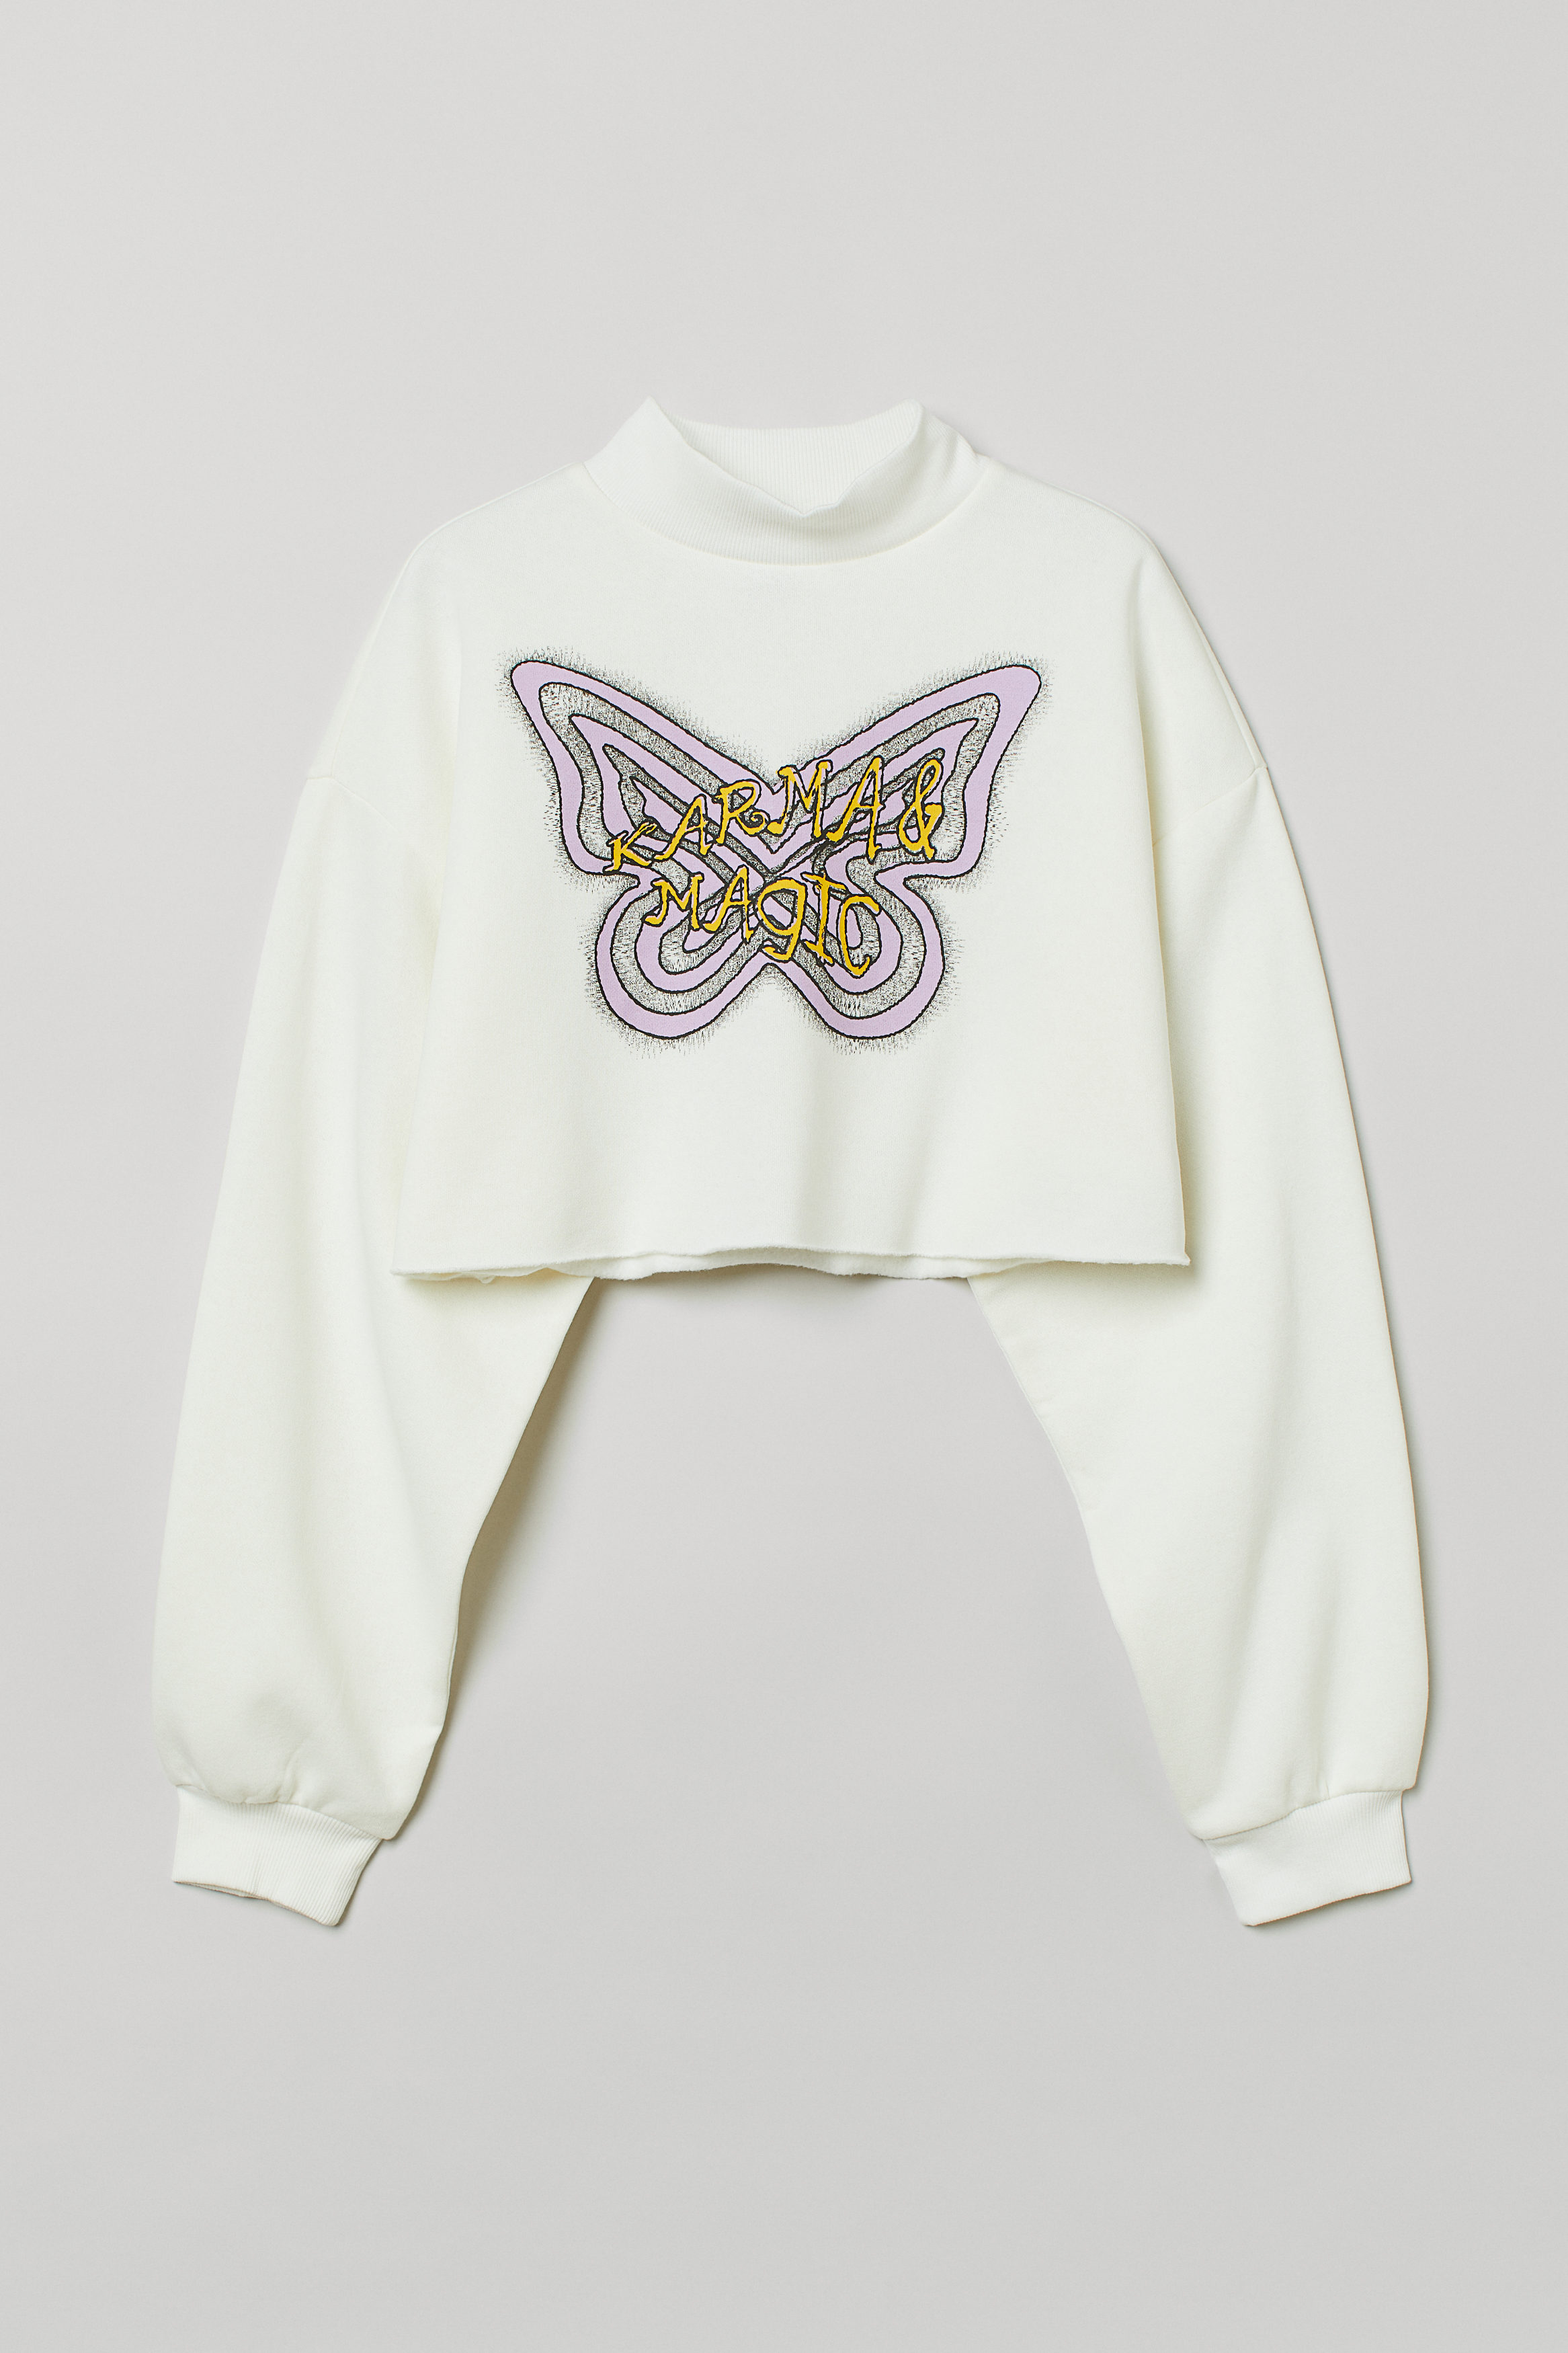 Billede af H&M Cropped Sweatshirt Hvid/karma, Hoodies & Sweatshirts. Farve: White/karma I størrelse L